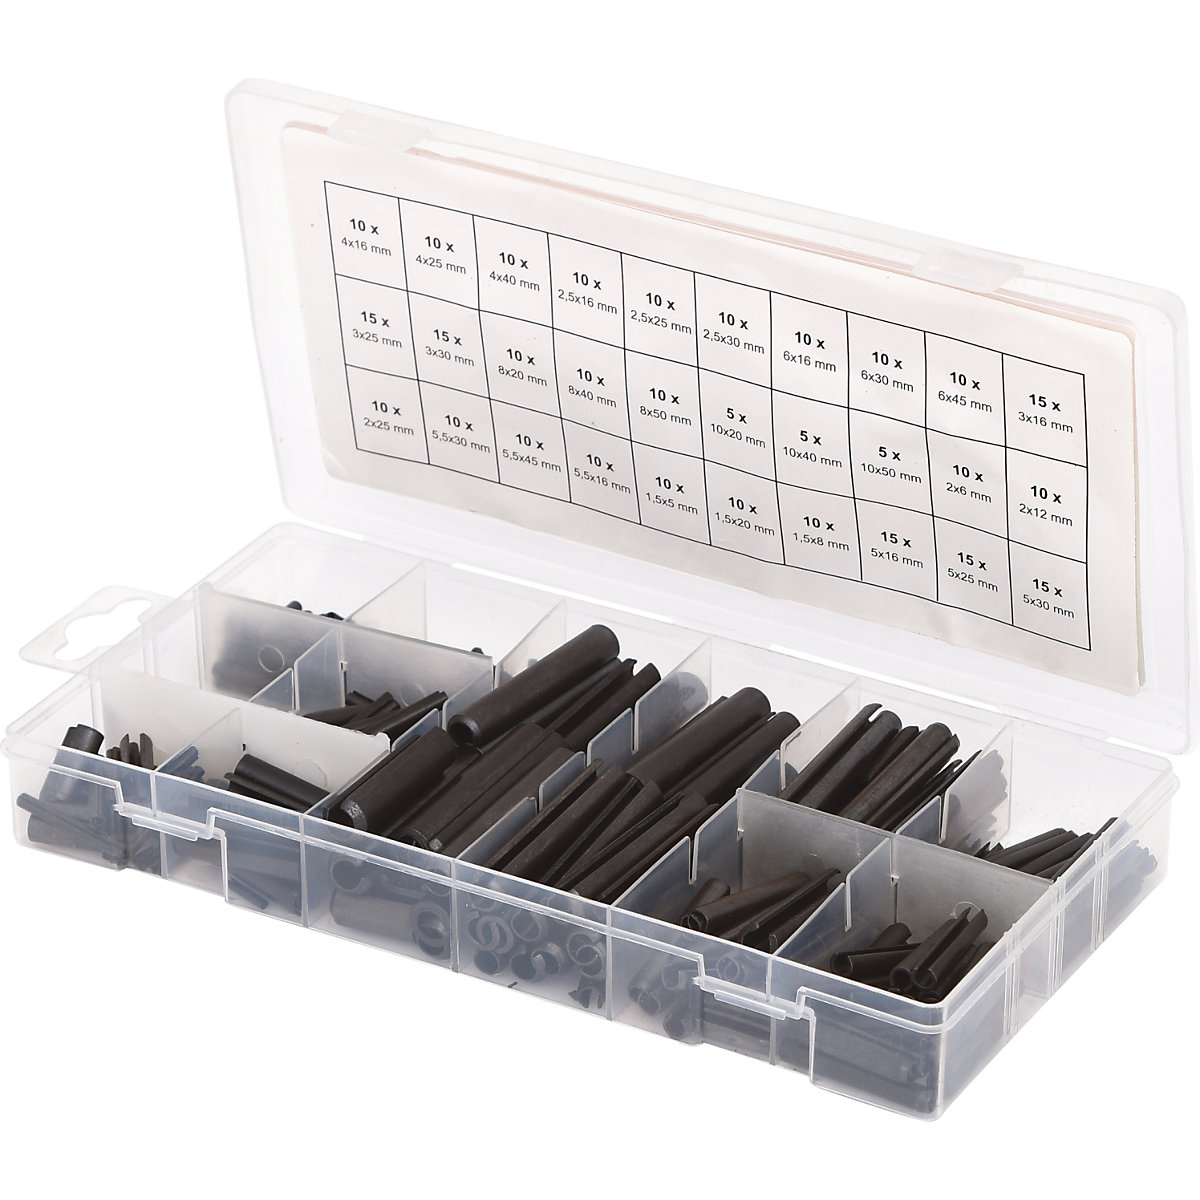 Assortment of roll pins – KS Tools